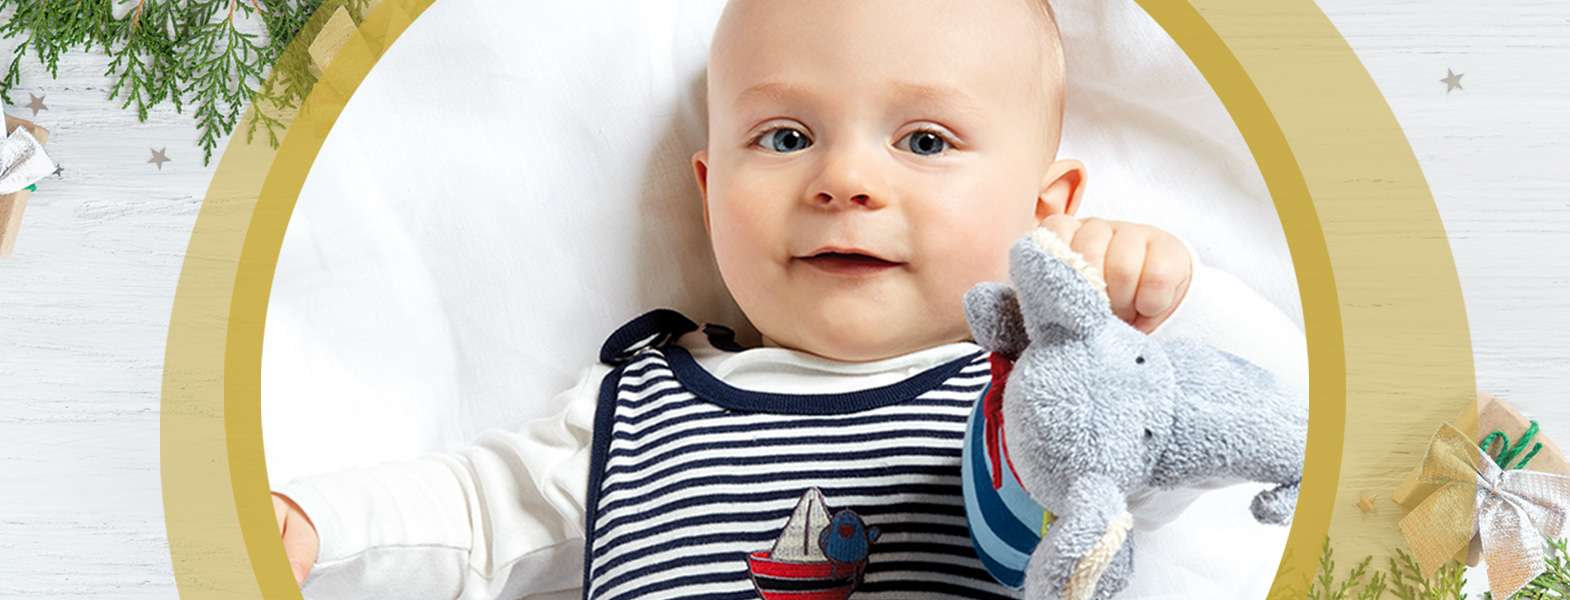 Ein Baby hält sein Lieblingskuscheltier in der Hand und lächelt dabei.